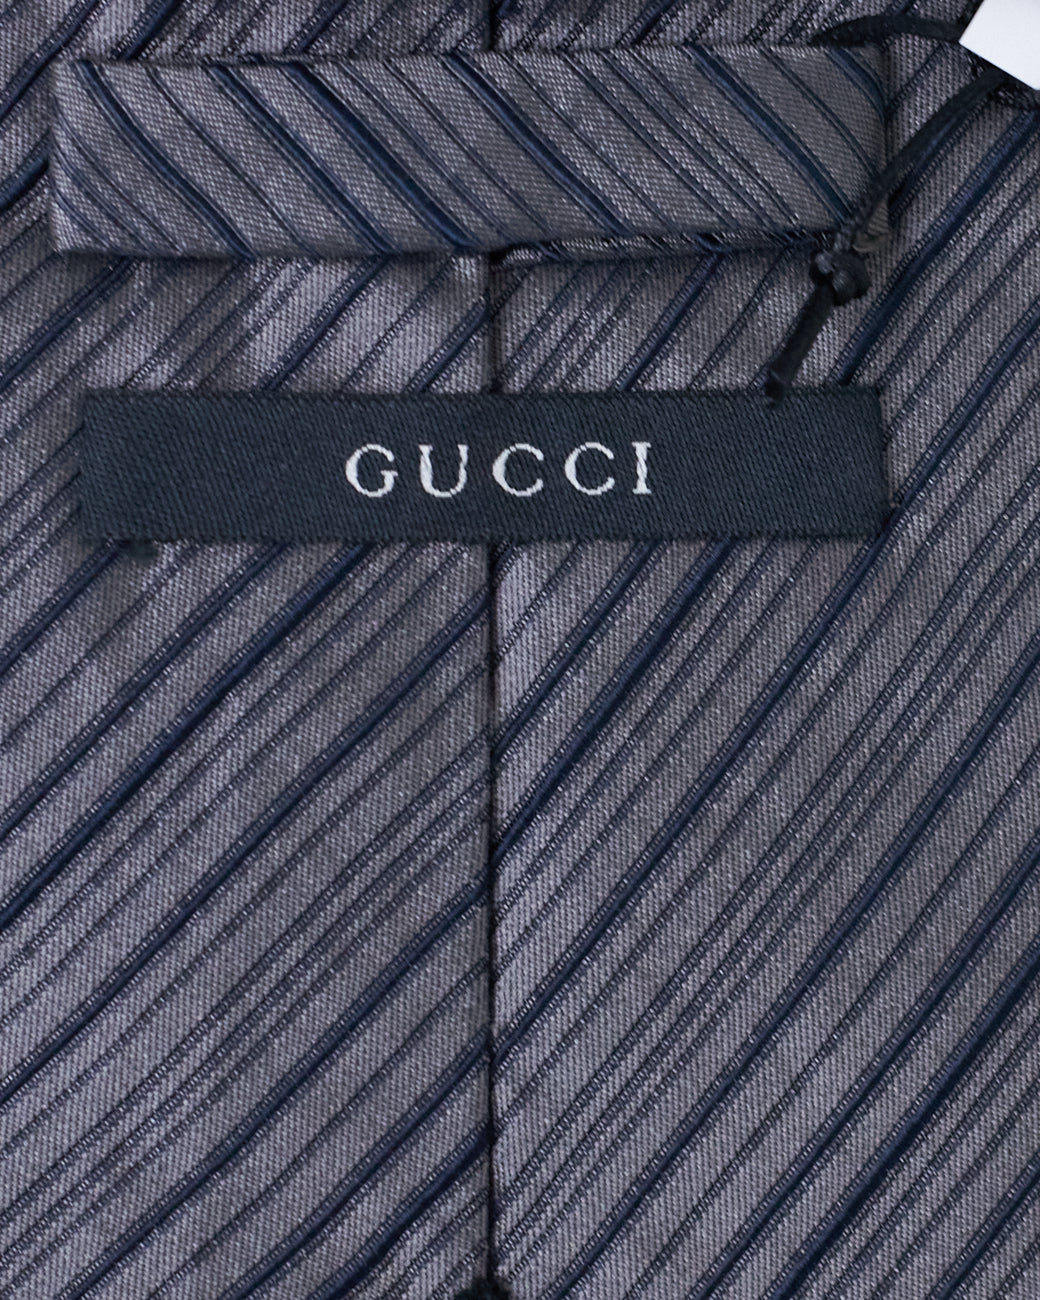 Cravate grise rayée Gucci 